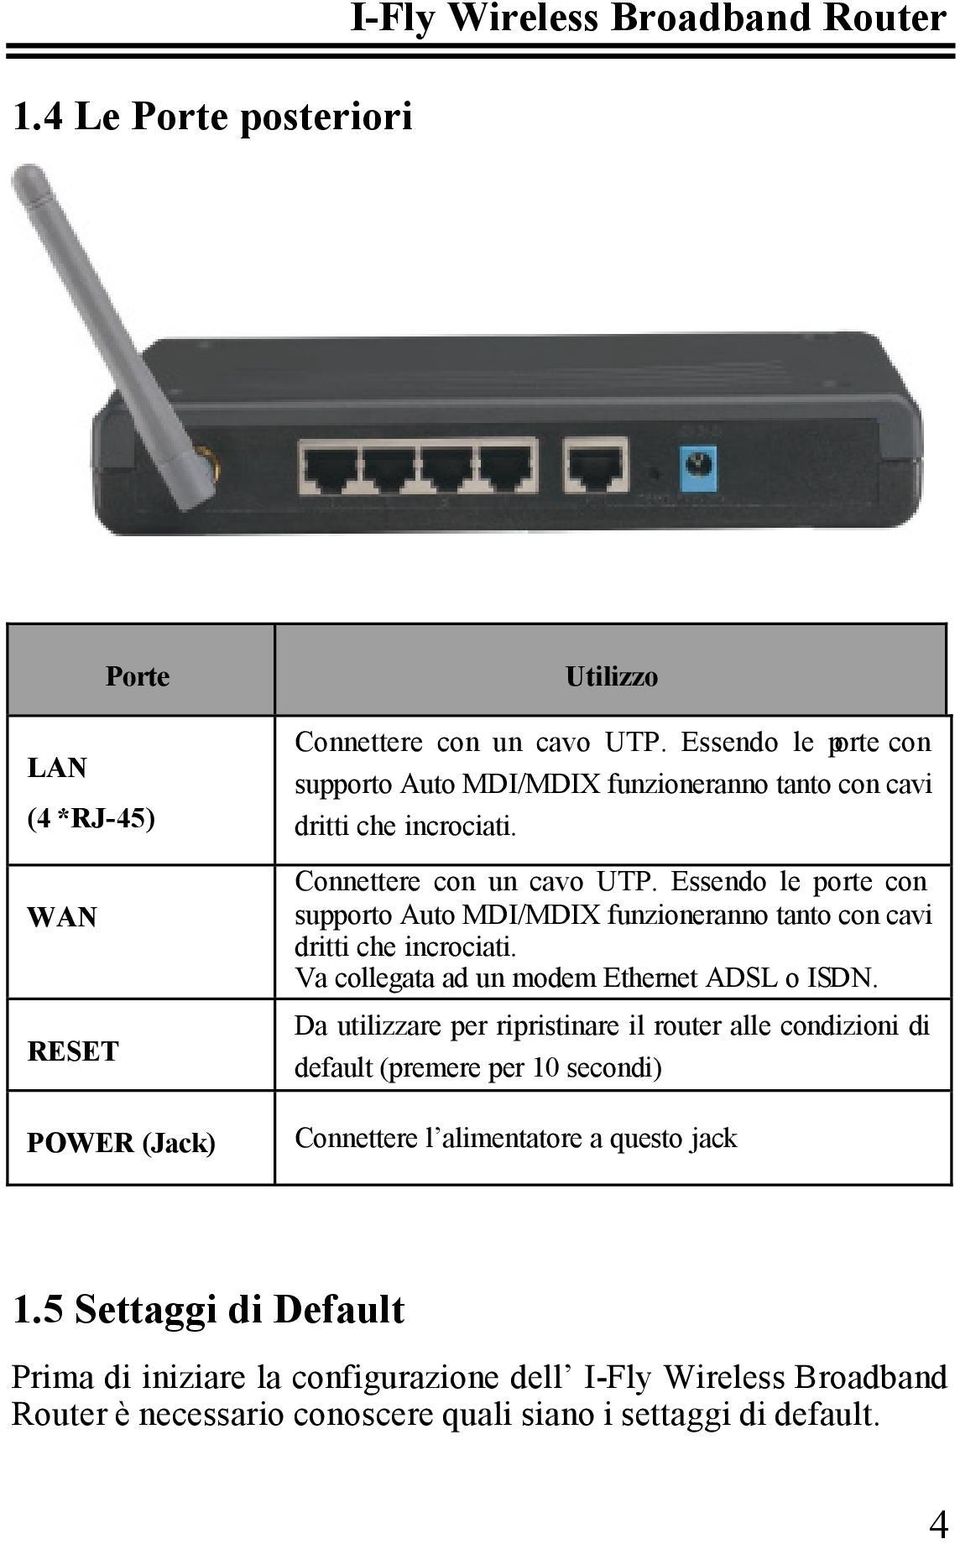 Essendo le porte con supporto Auto MDI/MDIX funzioneranno tanto con cavi dritti che incrociati. Va collegata ad un modem Ethernet ADSL o ISDN.